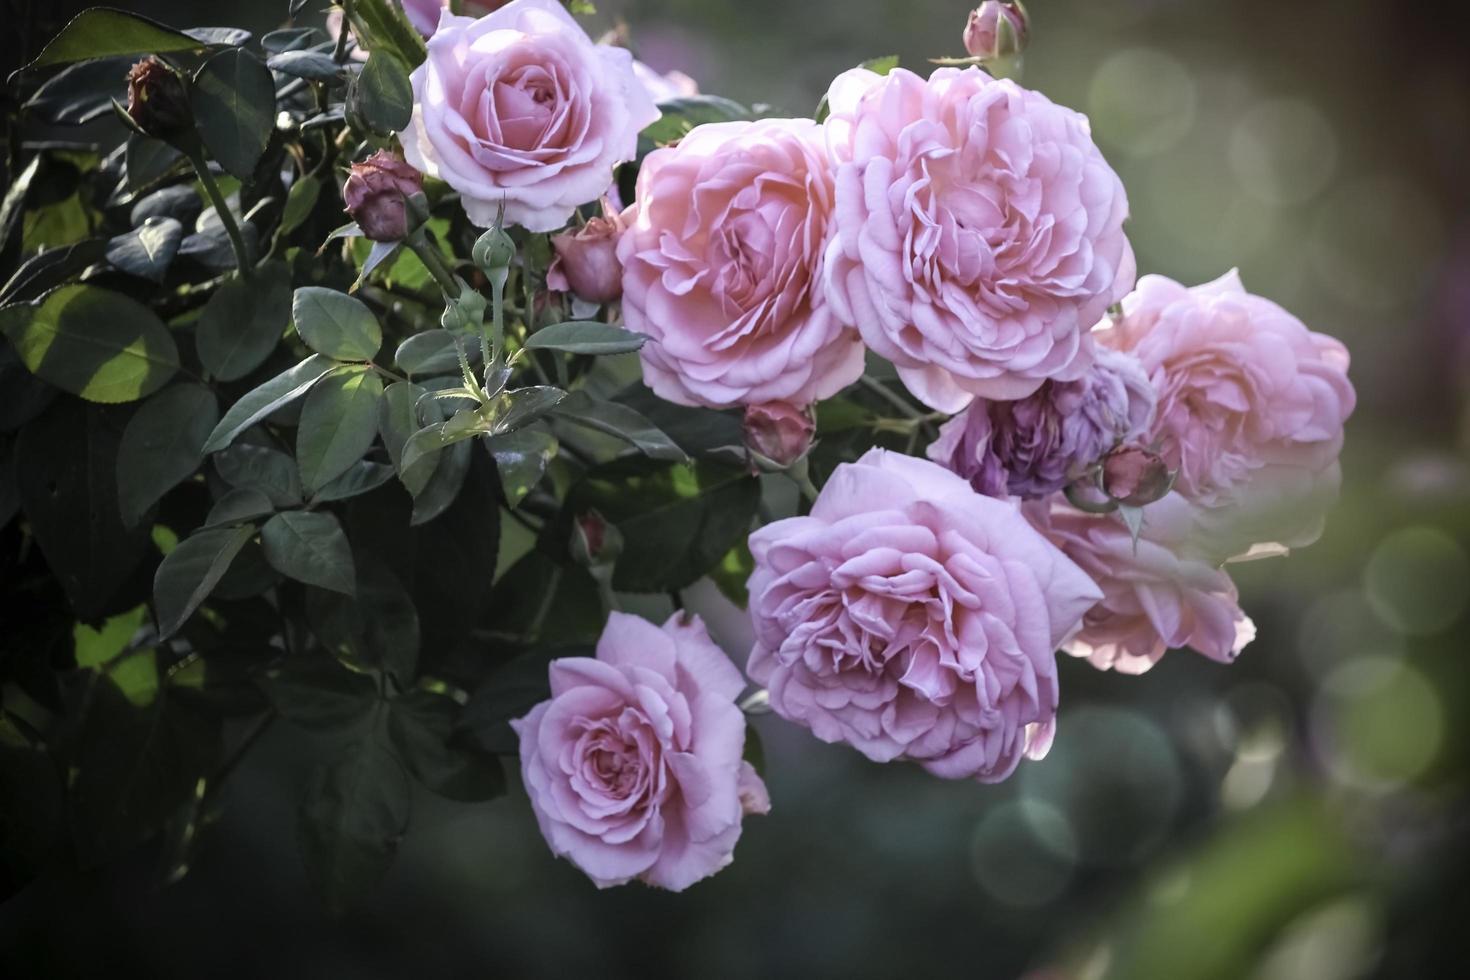 rosafarbene englische Rosen, die im Sommergarten blühen, eine der duftendsten Blumen, am besten riechende, schöne und romantische Blume foto